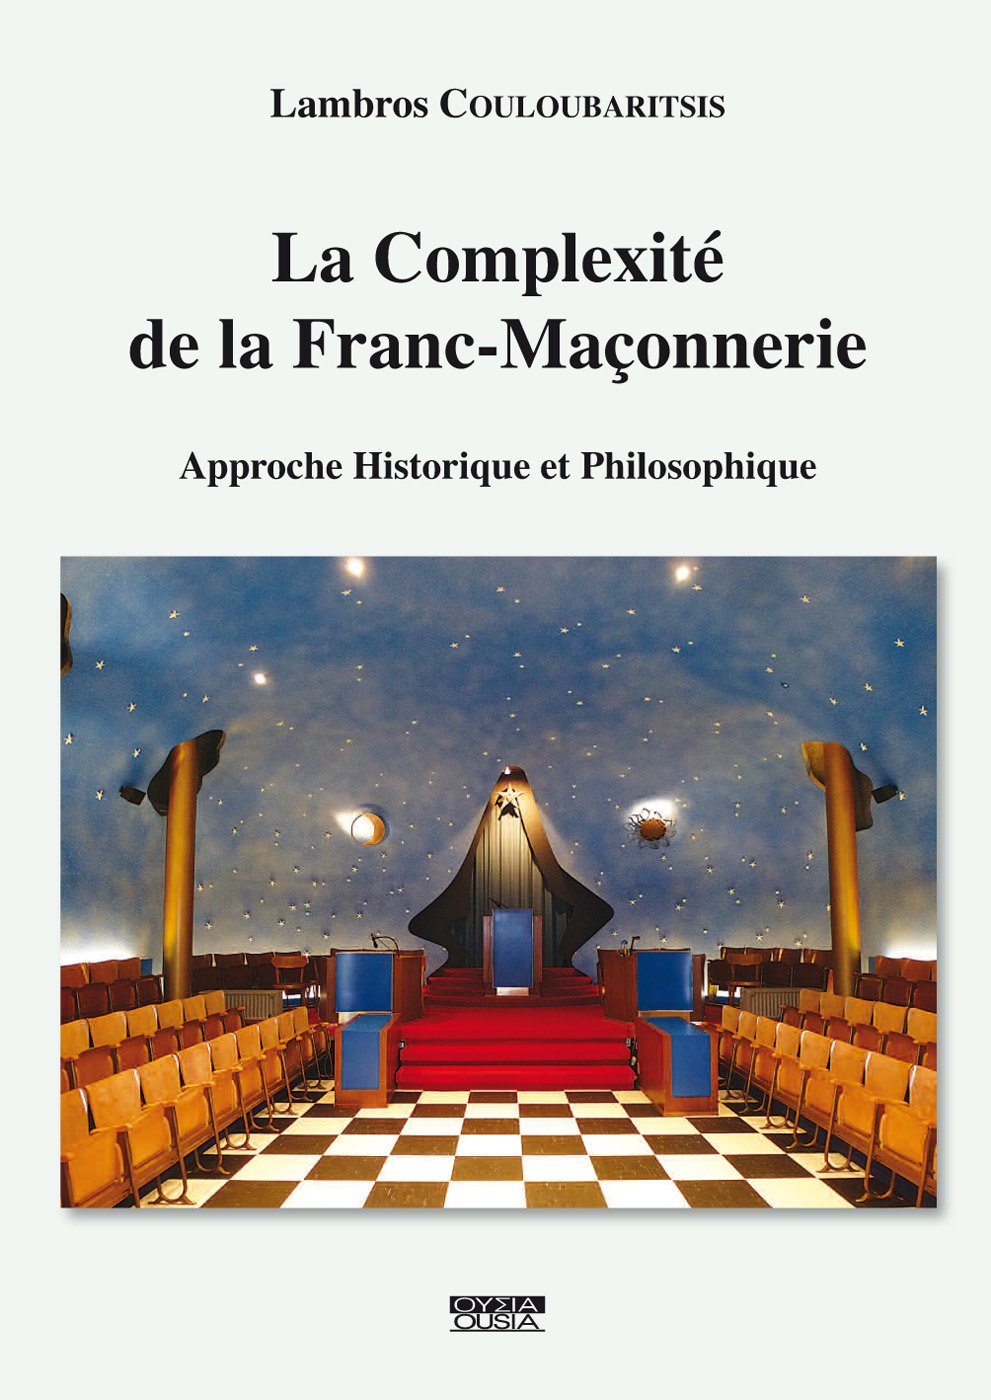 Histoire De La Franc Maçonnerie Livre Histoire de la Franc maçonnerie - Scribe Villard de Honnecourt Franc